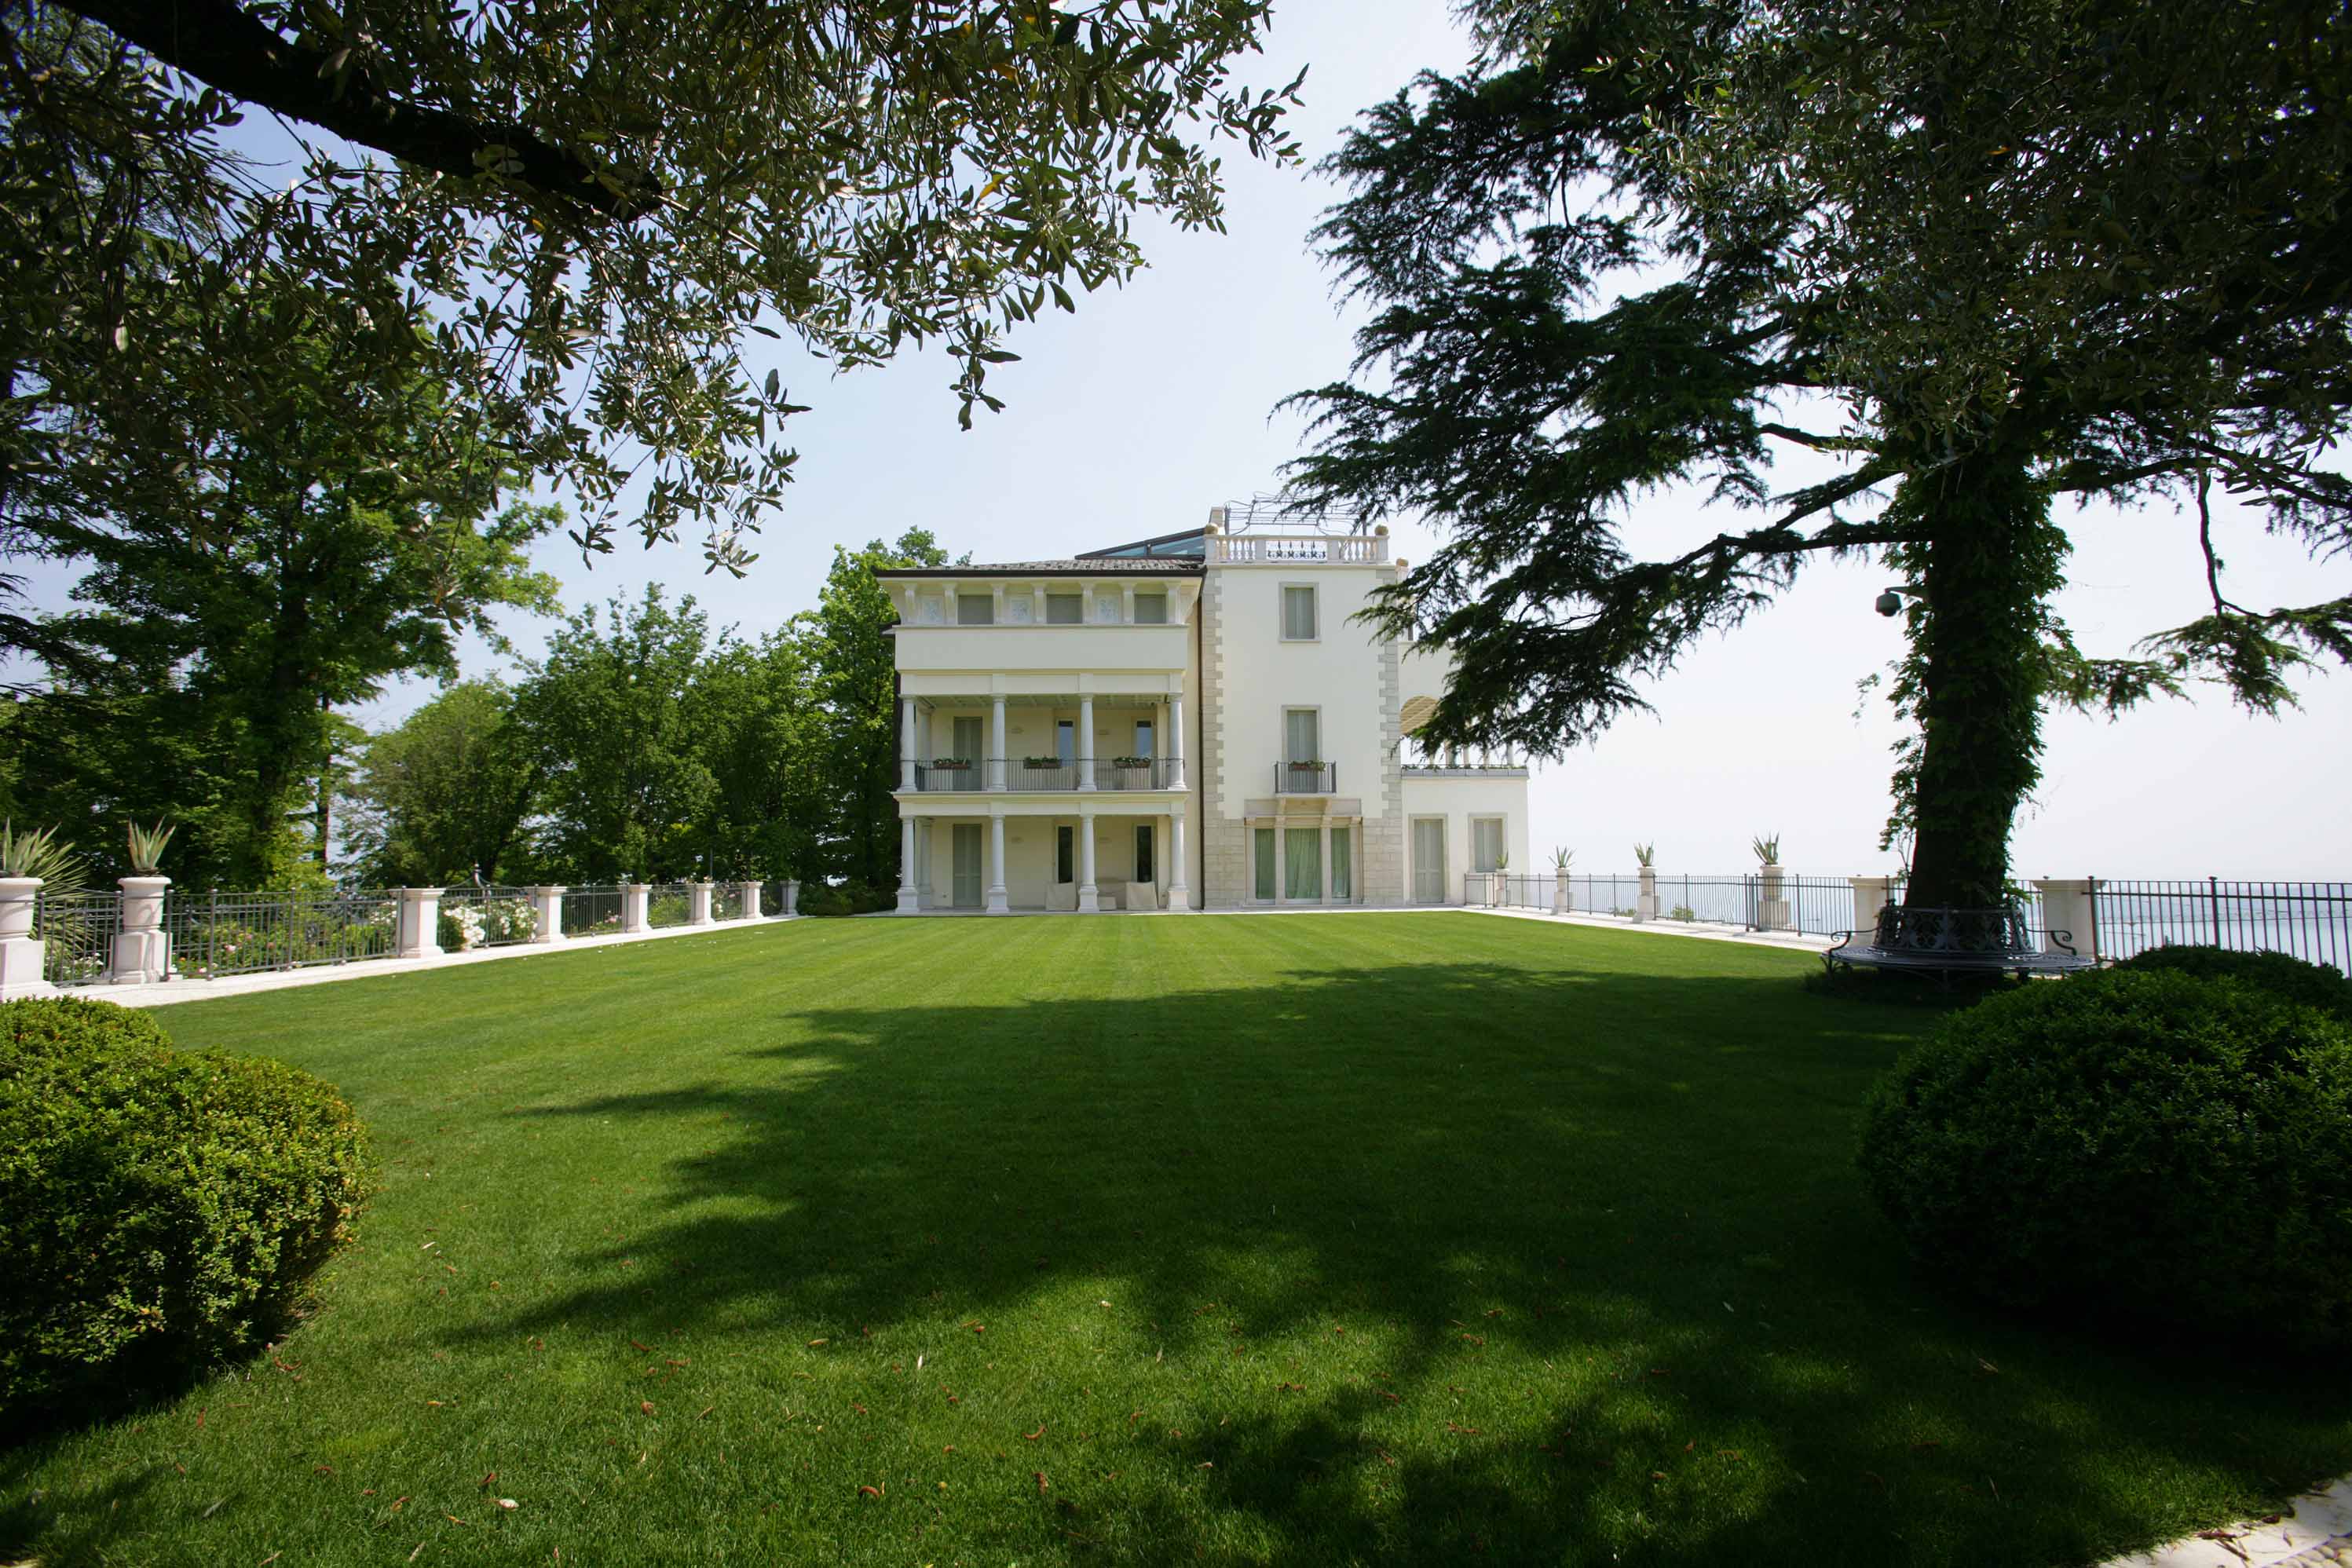 Villa with breathtaking view - الحدائق